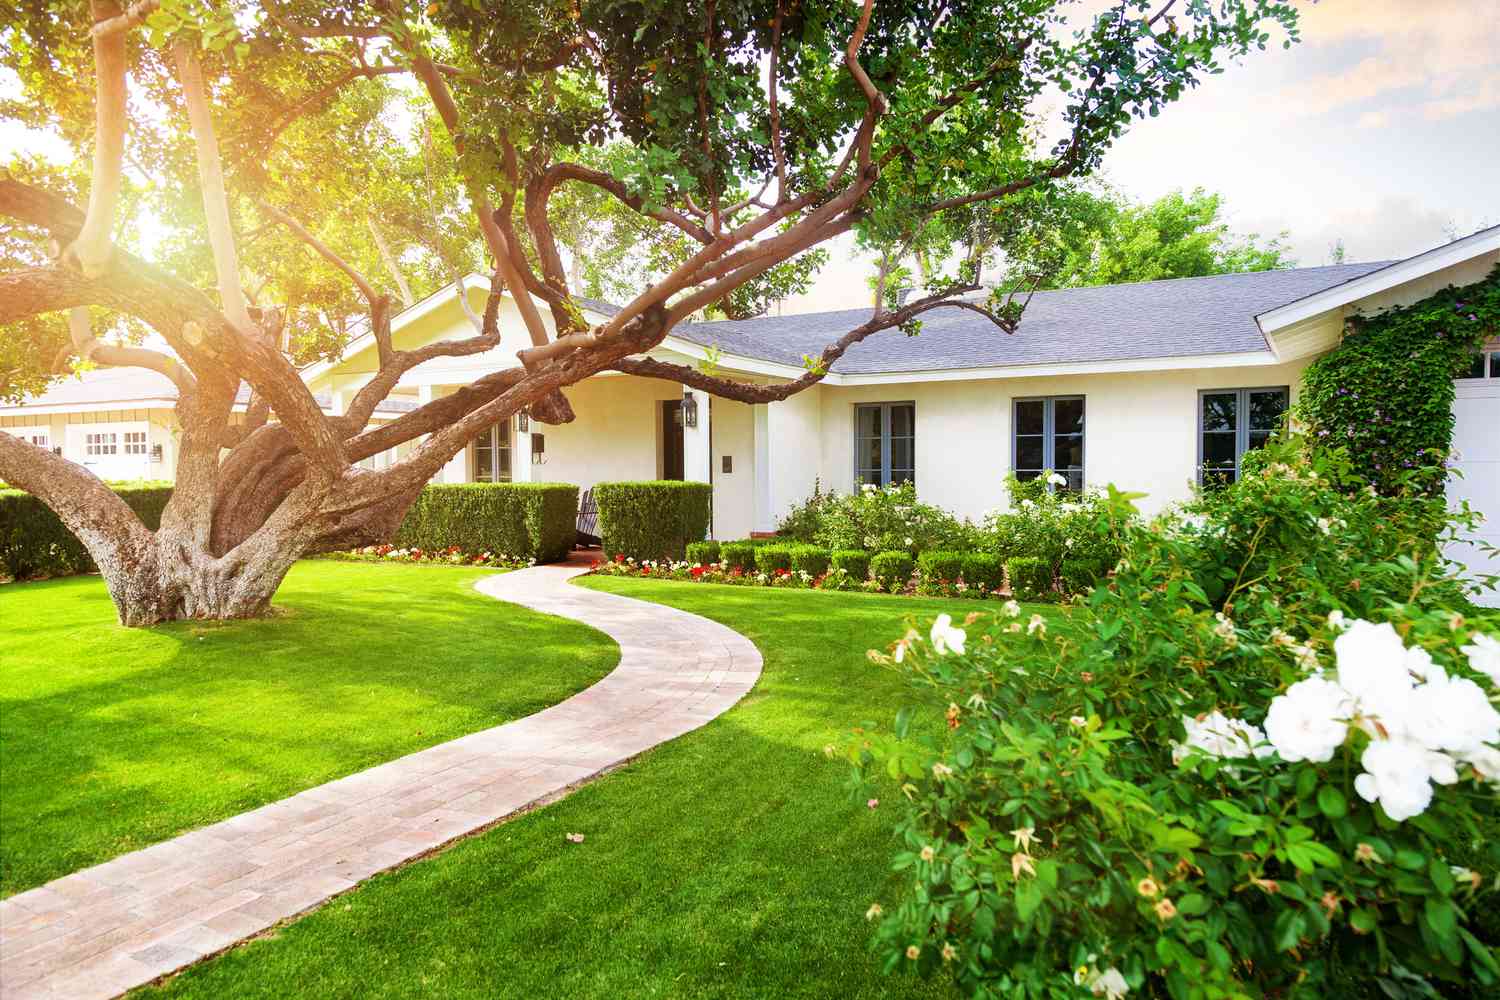 Una casa blanca estilo rancho con césped verde, un gran árbol bajo y arbustos en flor.